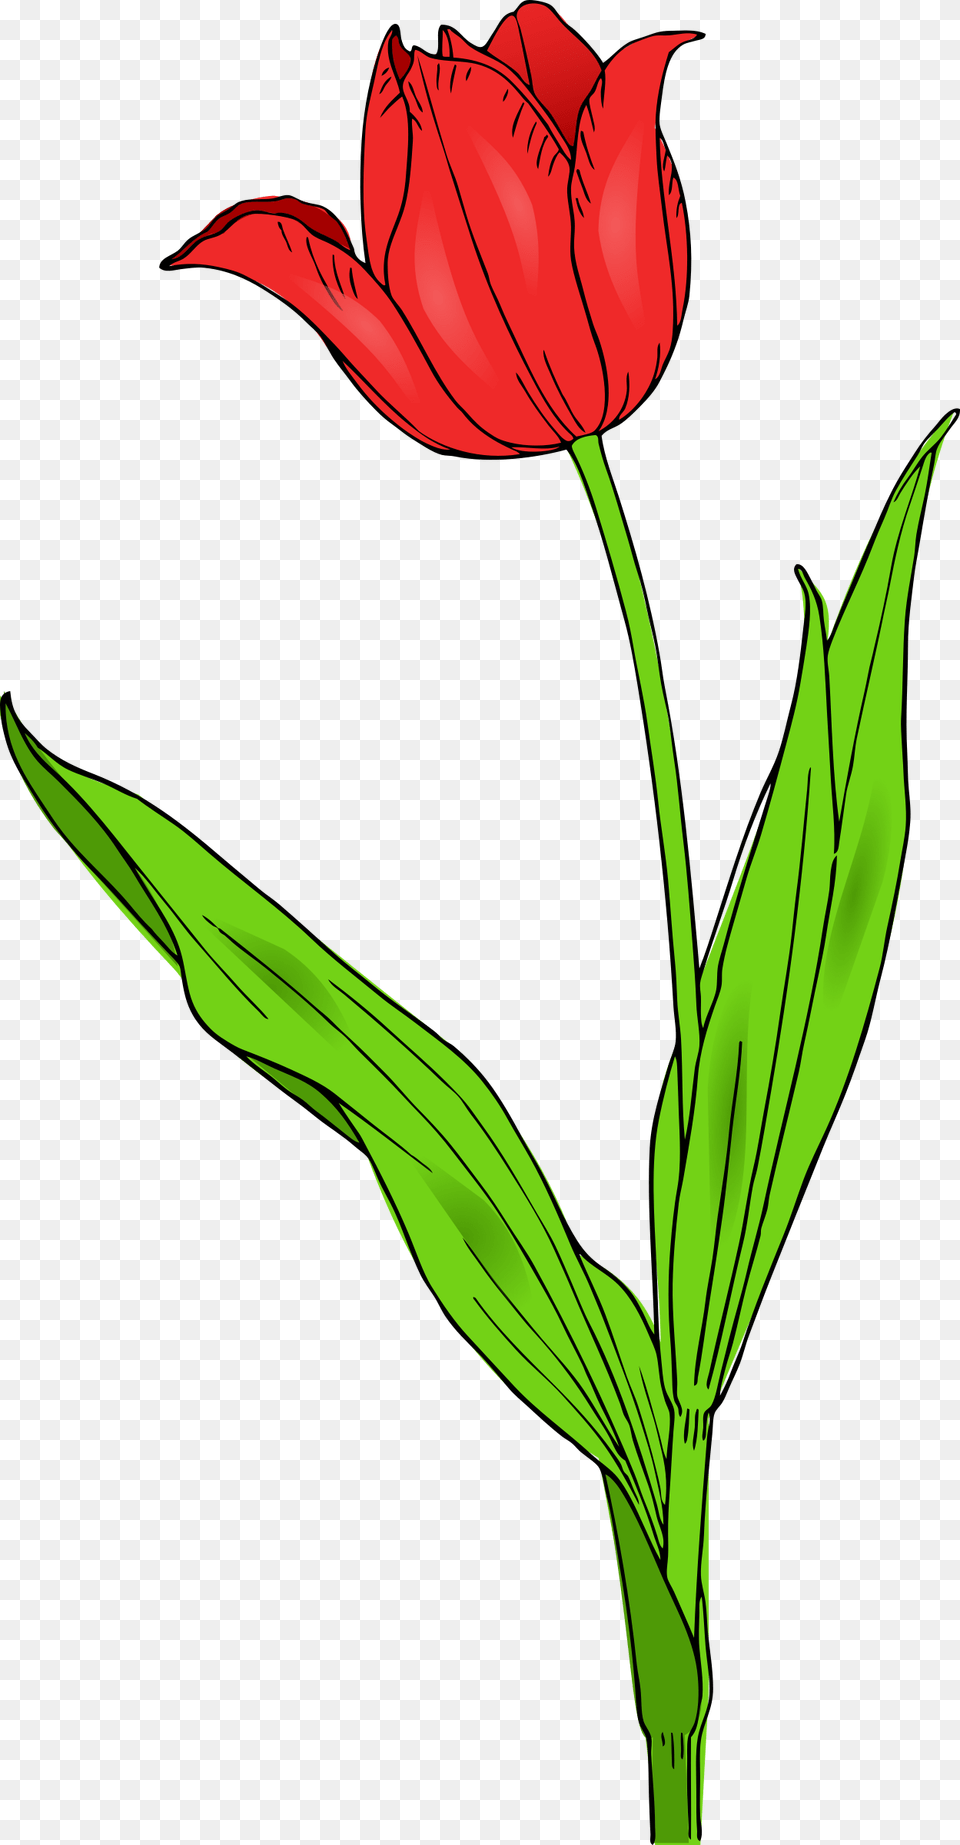 Colored Tulip, Flower, Plant, Leaf, Rose Png Image